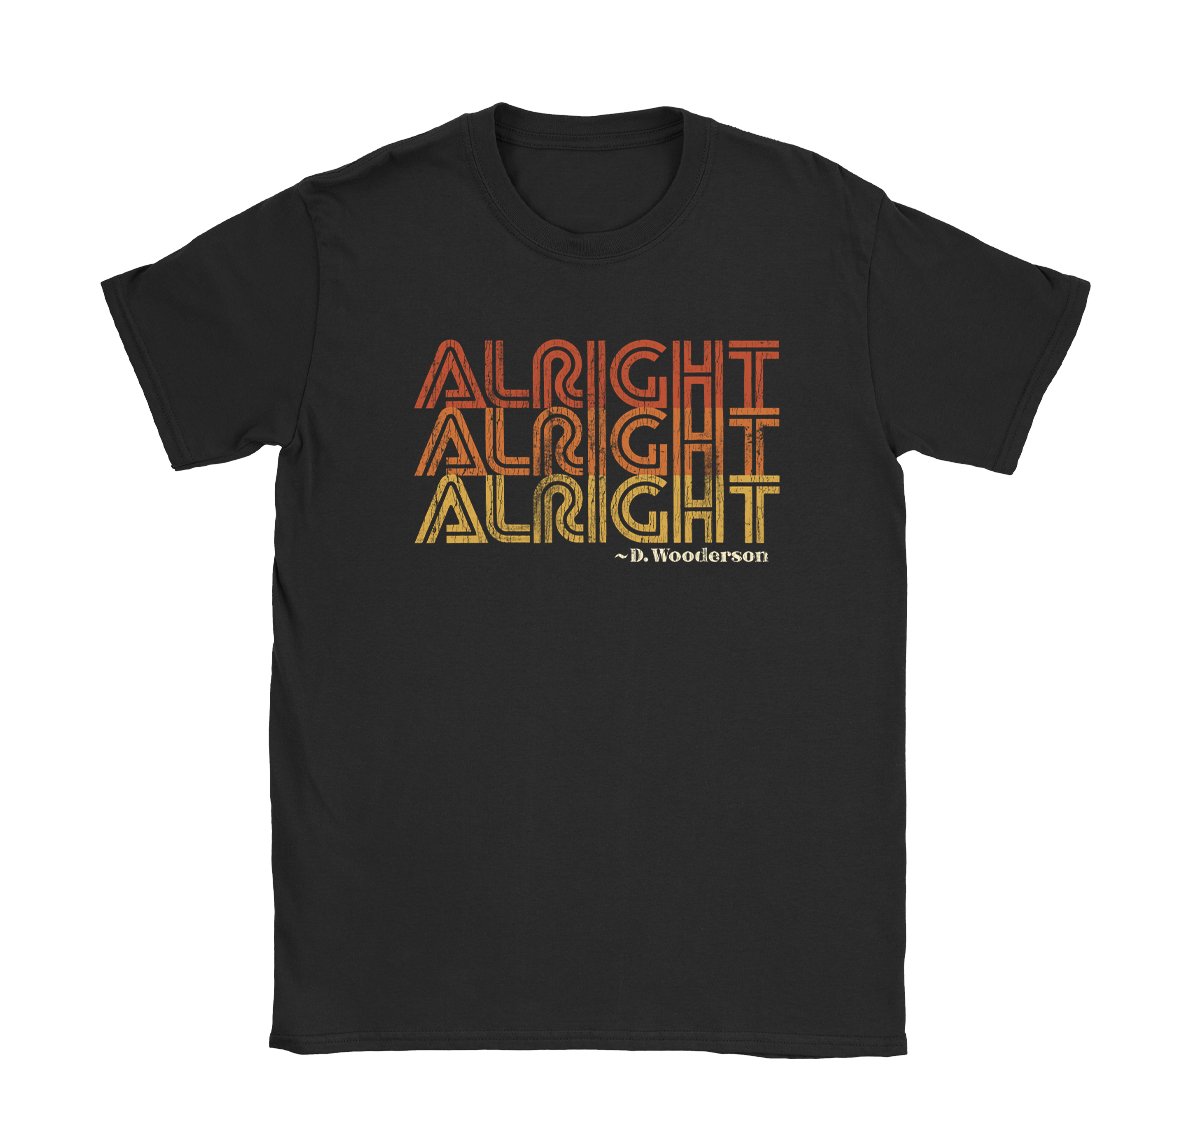 Alright Alright Alright T-Shirt - Black Cat MFG - T-Shirt